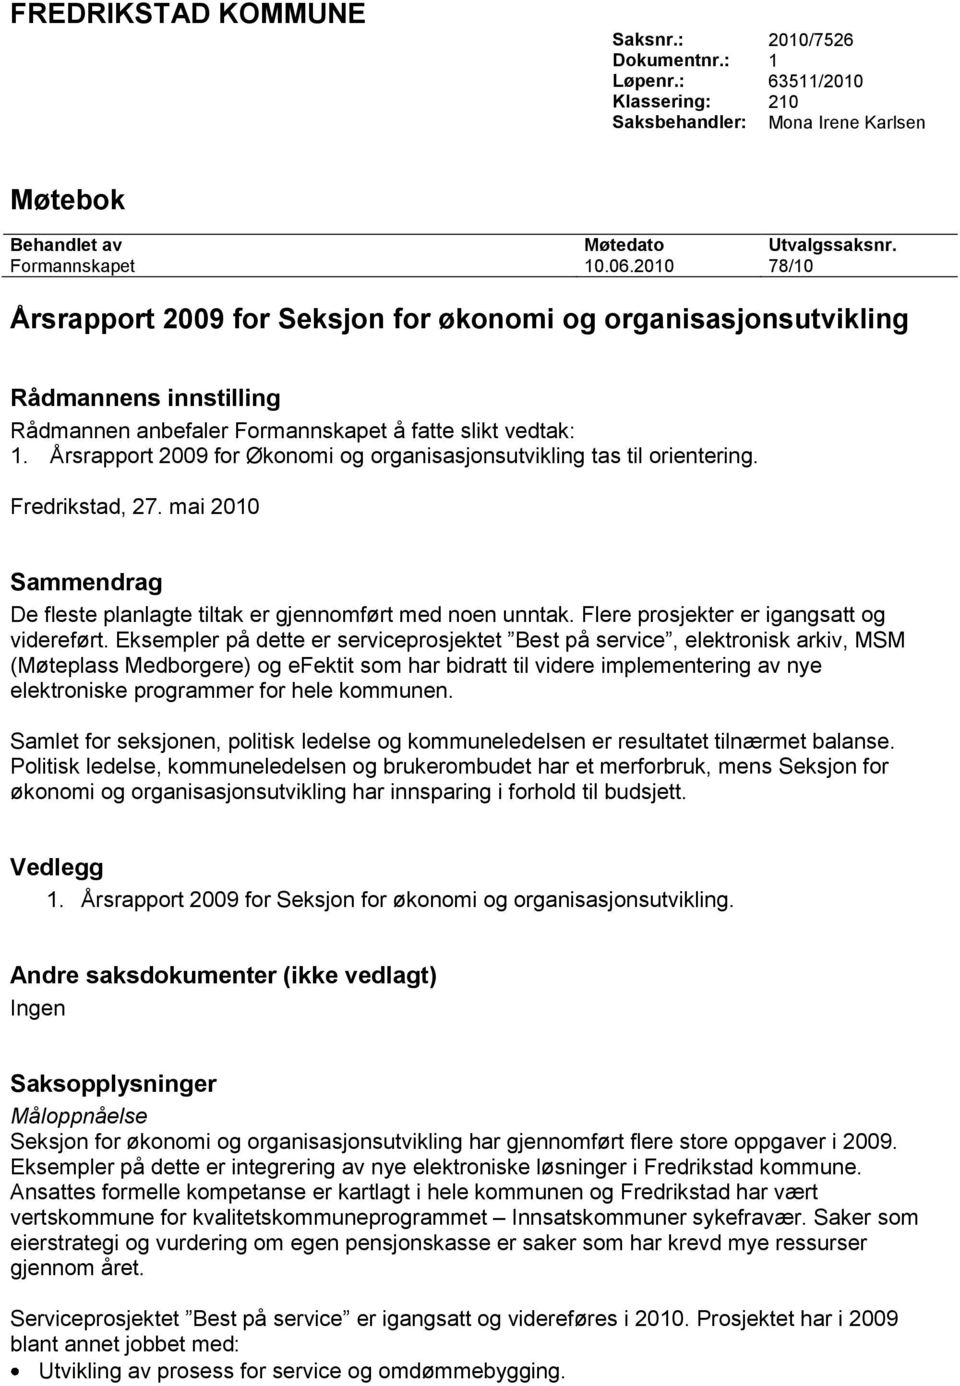 Årsrapport 2009 for Økonomi og organisasjonsutvikling tas til orientering. Fredrikstad, 27. mai 2010 Sammendrag De fleste planlagte tiltak er gjennomført med noen unntak.